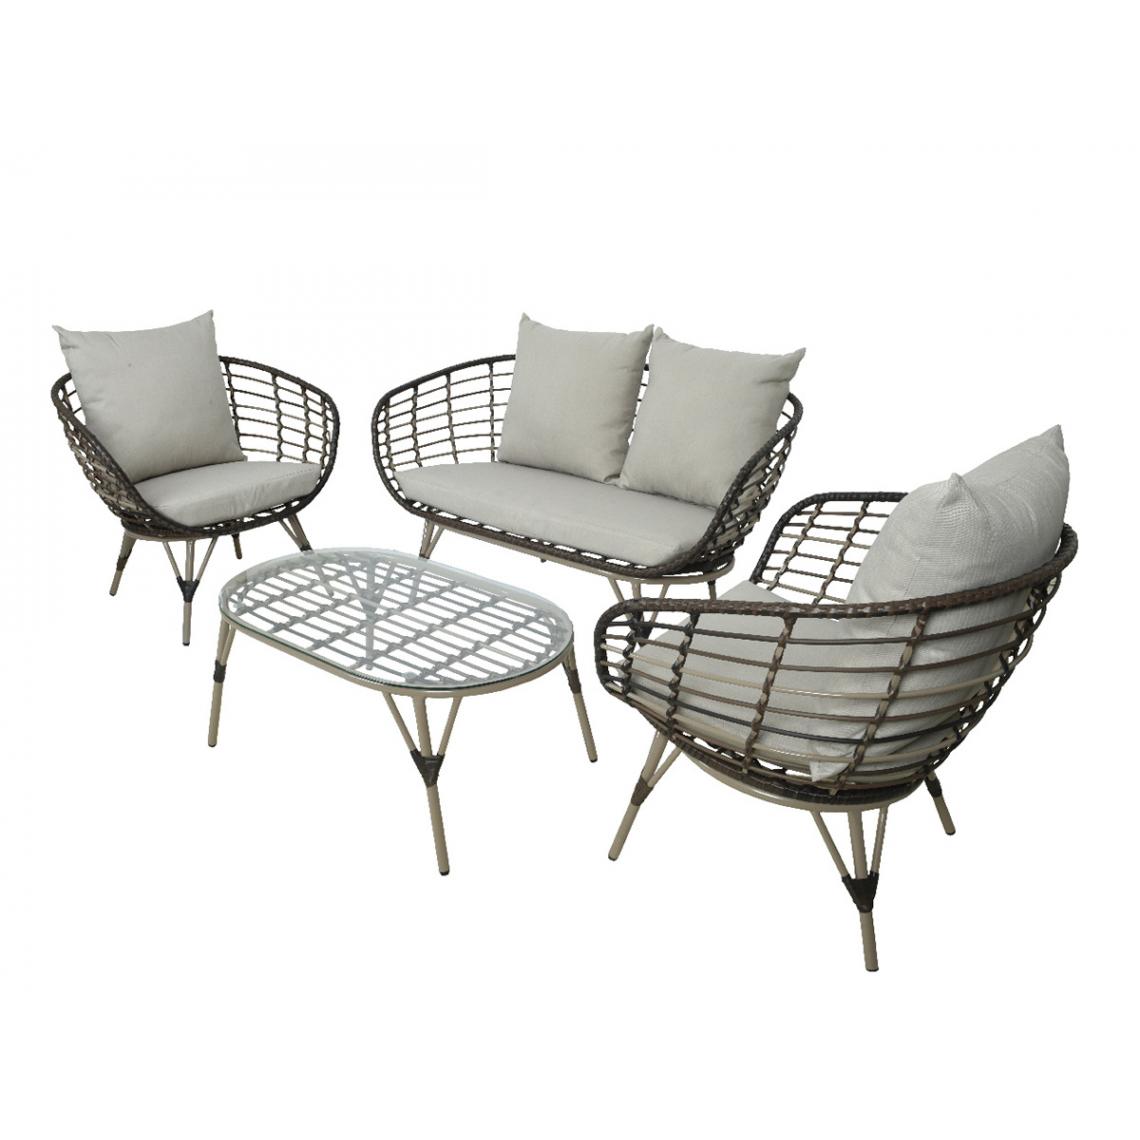 Jardideco - Salon de jardin en résine tressée brun Evora avec table basse - 4 places - Ensembles canapés et fauteuils